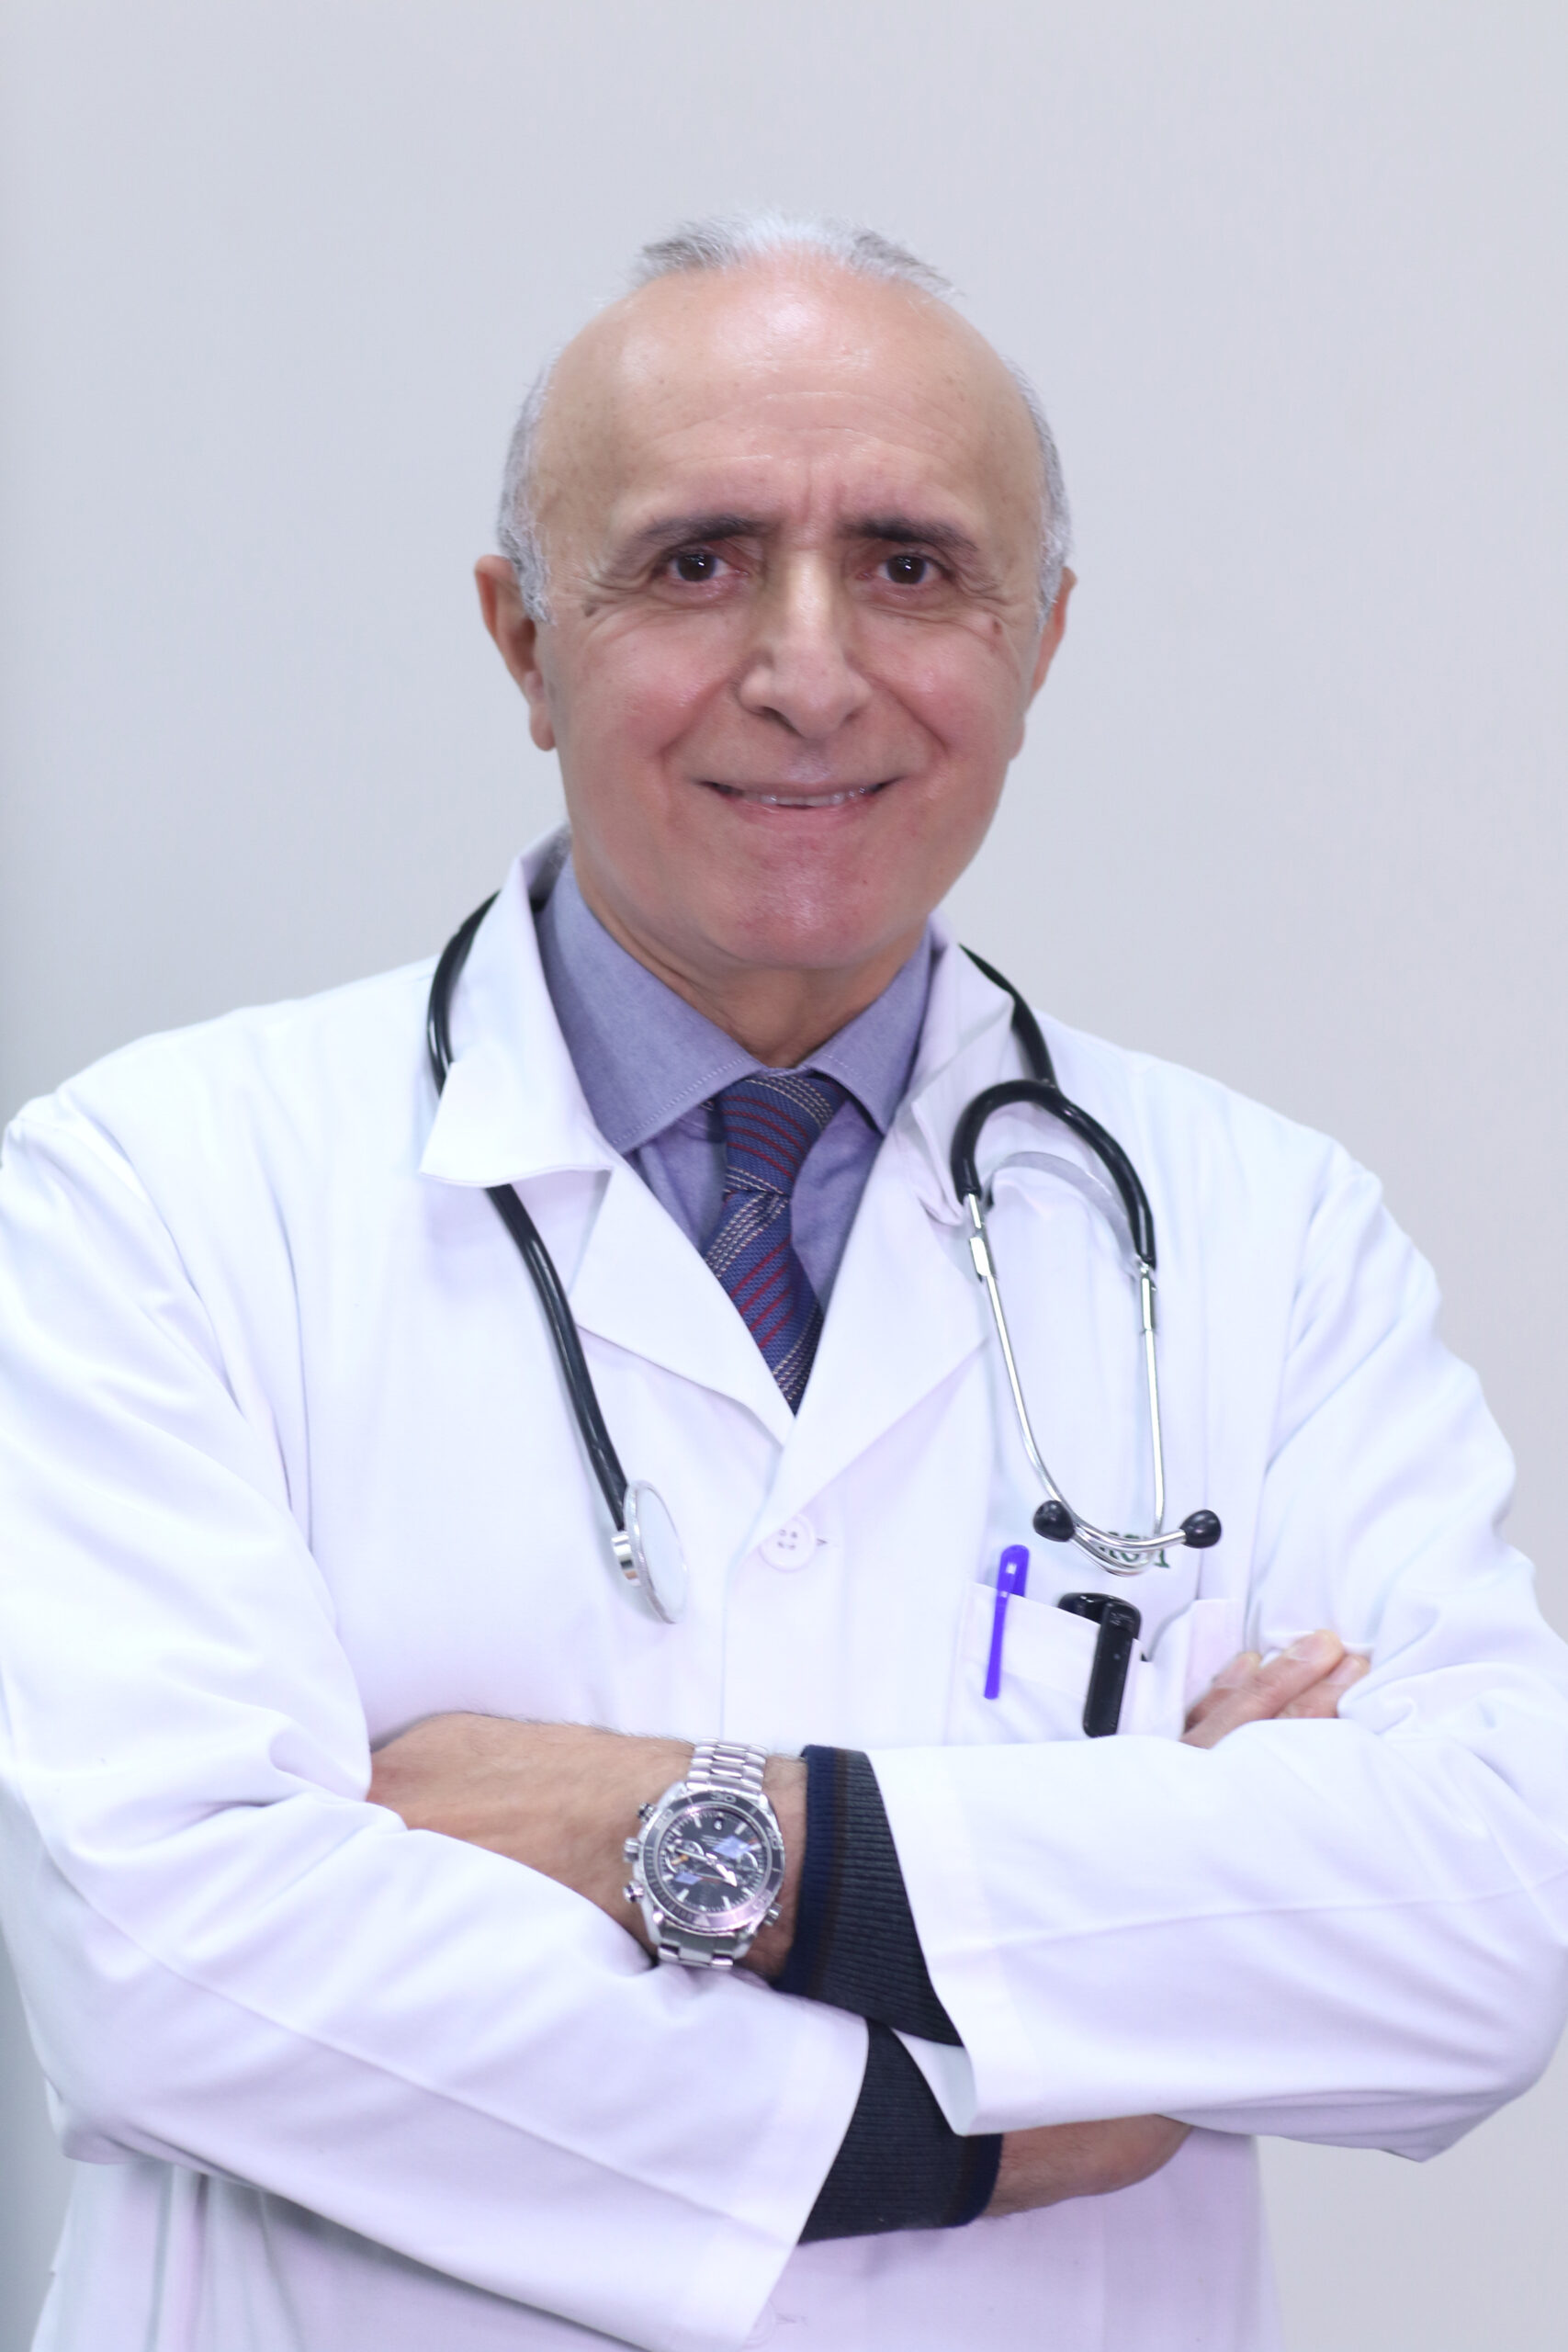 Mustafa Asaad Oweidat, MD